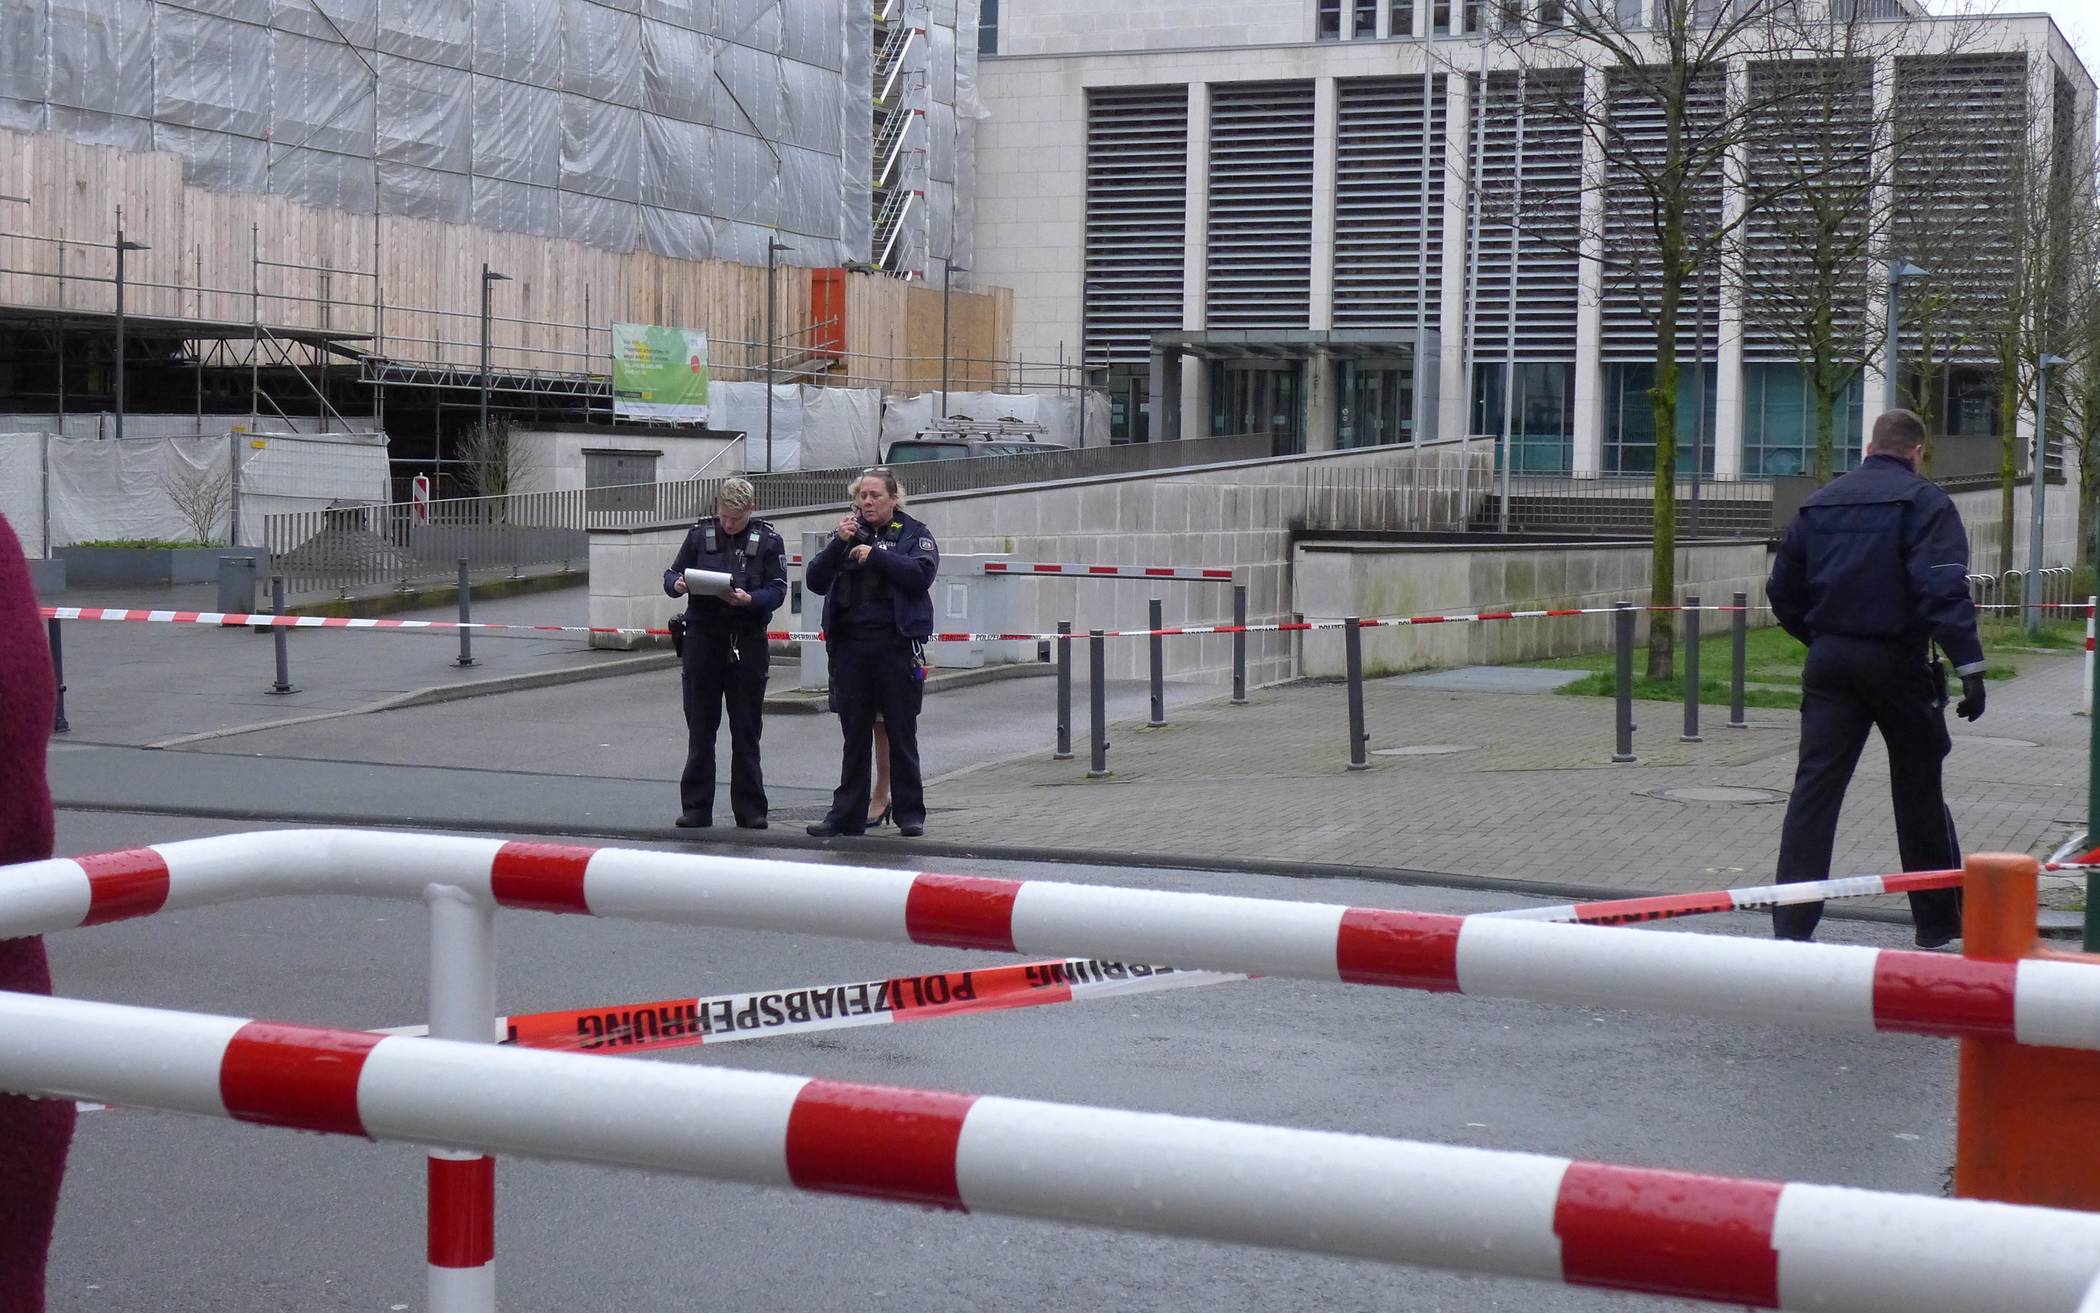 Bombendrohung am Wuppertaler Landgericht